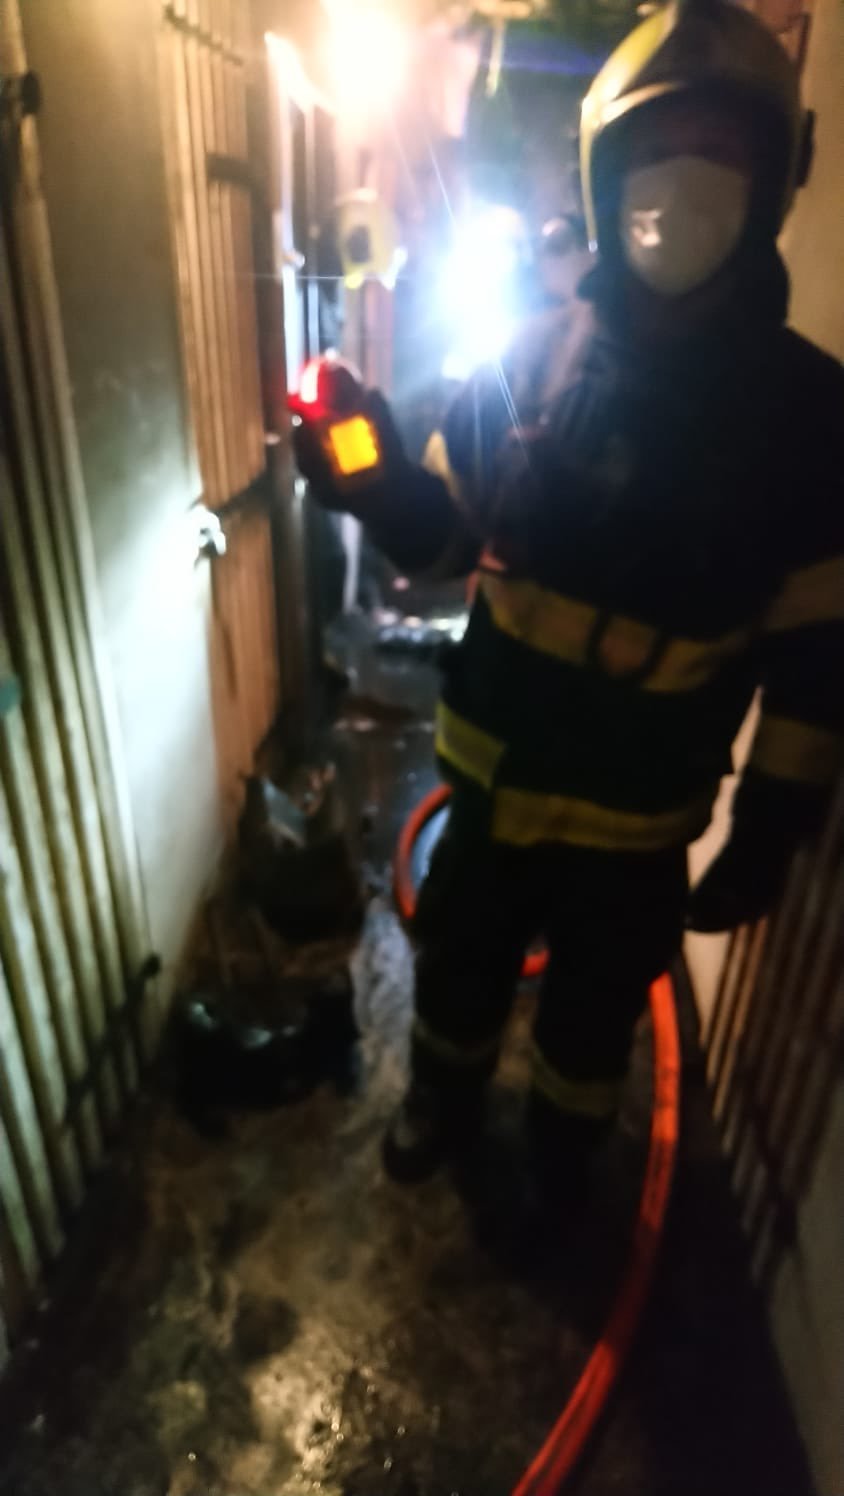 Ve sklepě domu v Braníku hořelo (26. 2. 2021).